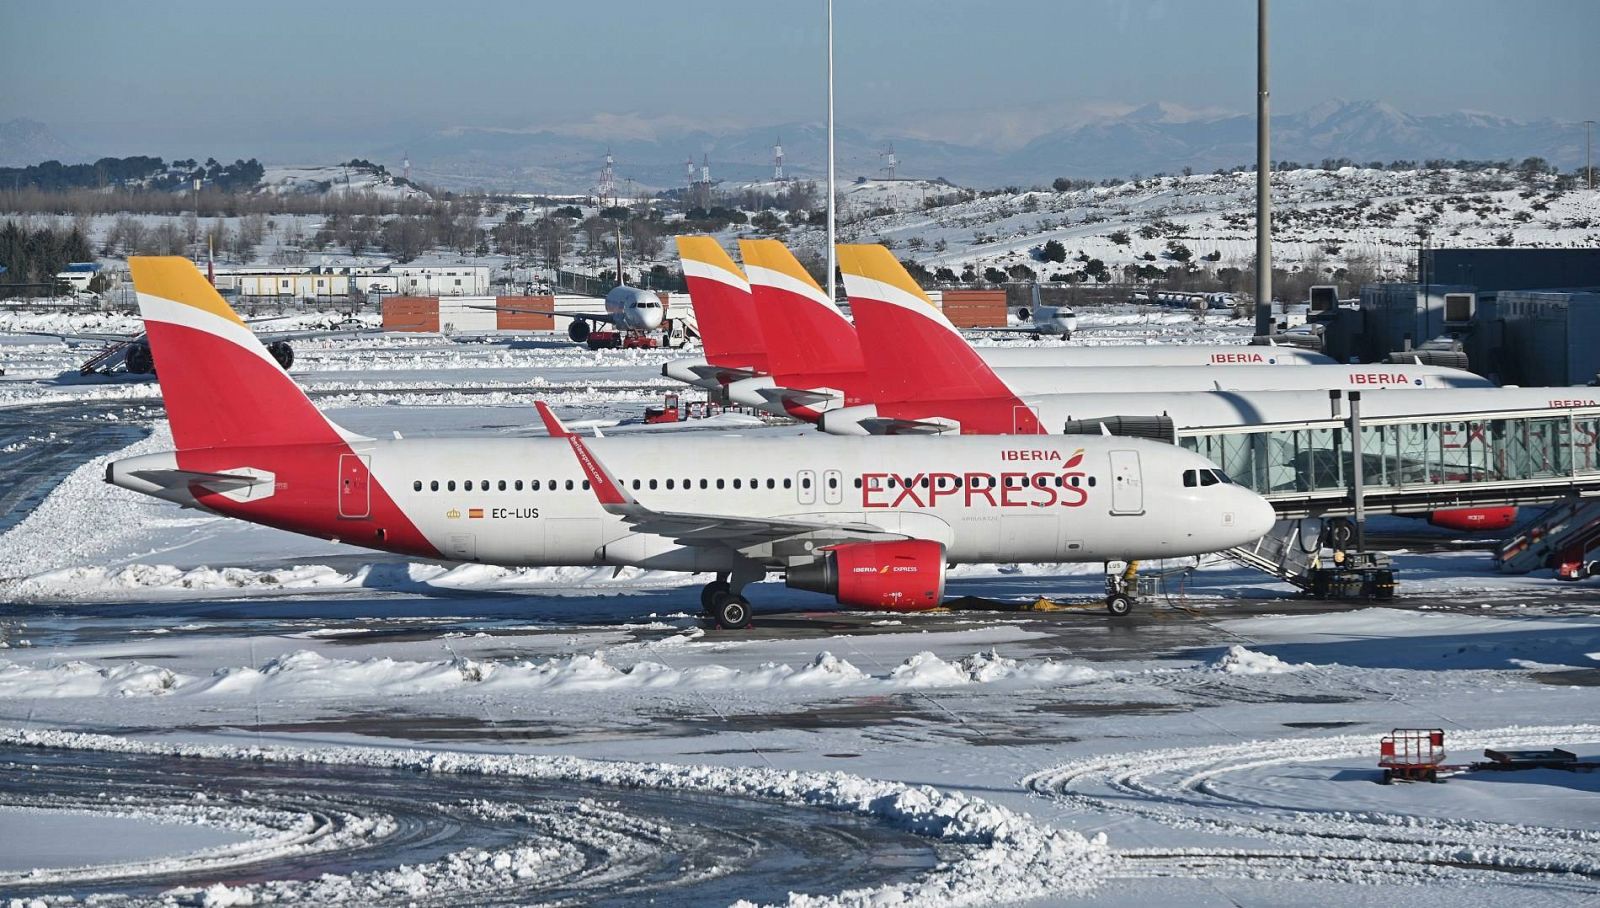 Varios aviones de la aerolínea Iberia Express aparcados en la Terminal 4 del aeropuerto Adolfo Suárez Madrid-Barajas